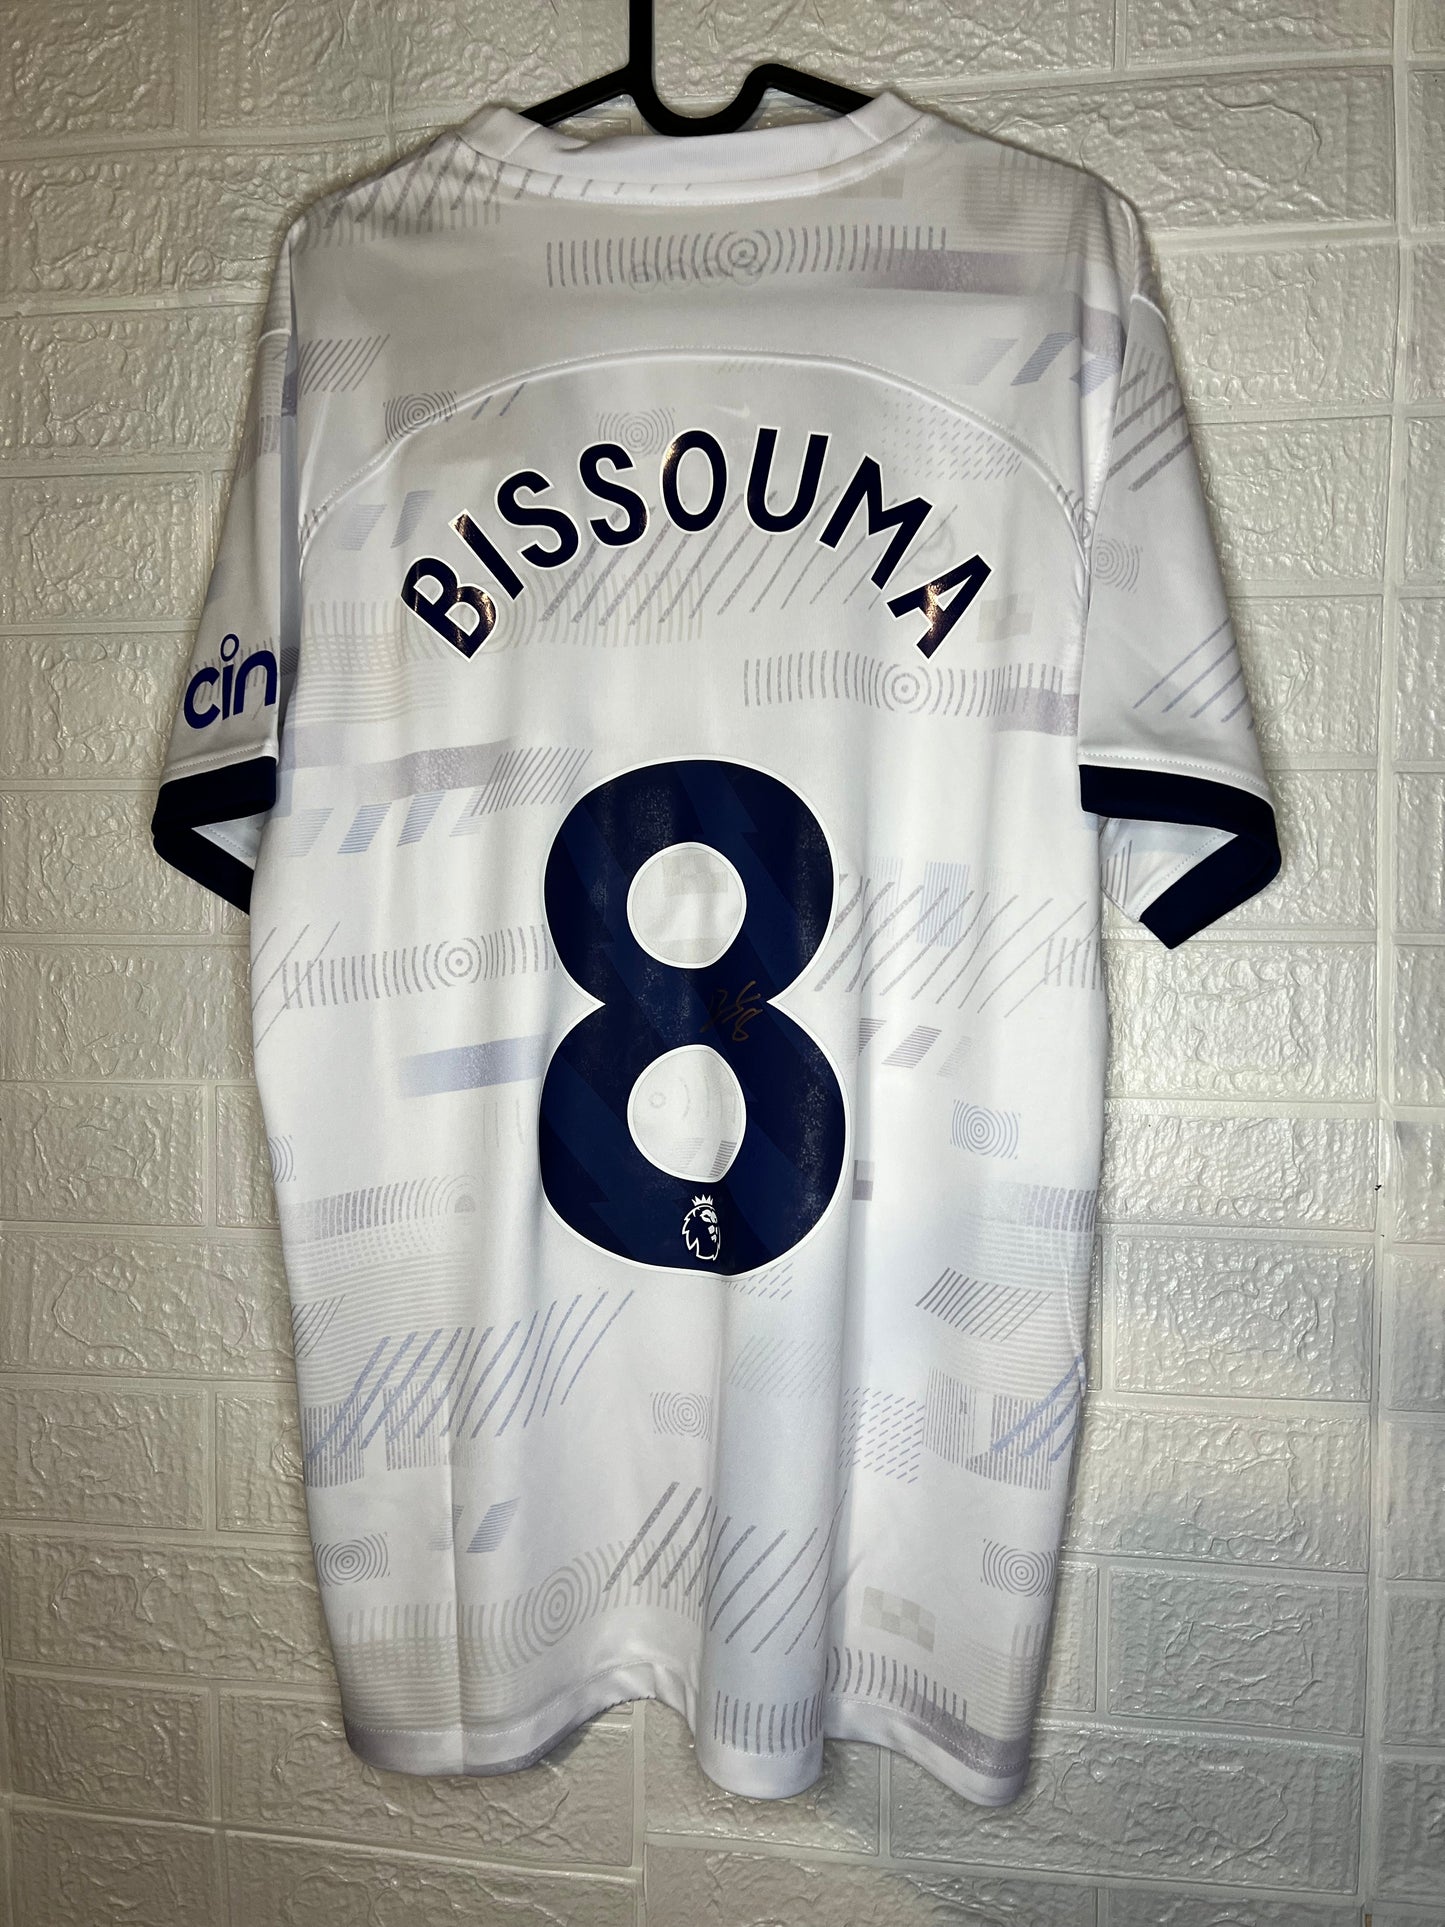 Bissouma signed Tottenham shirt